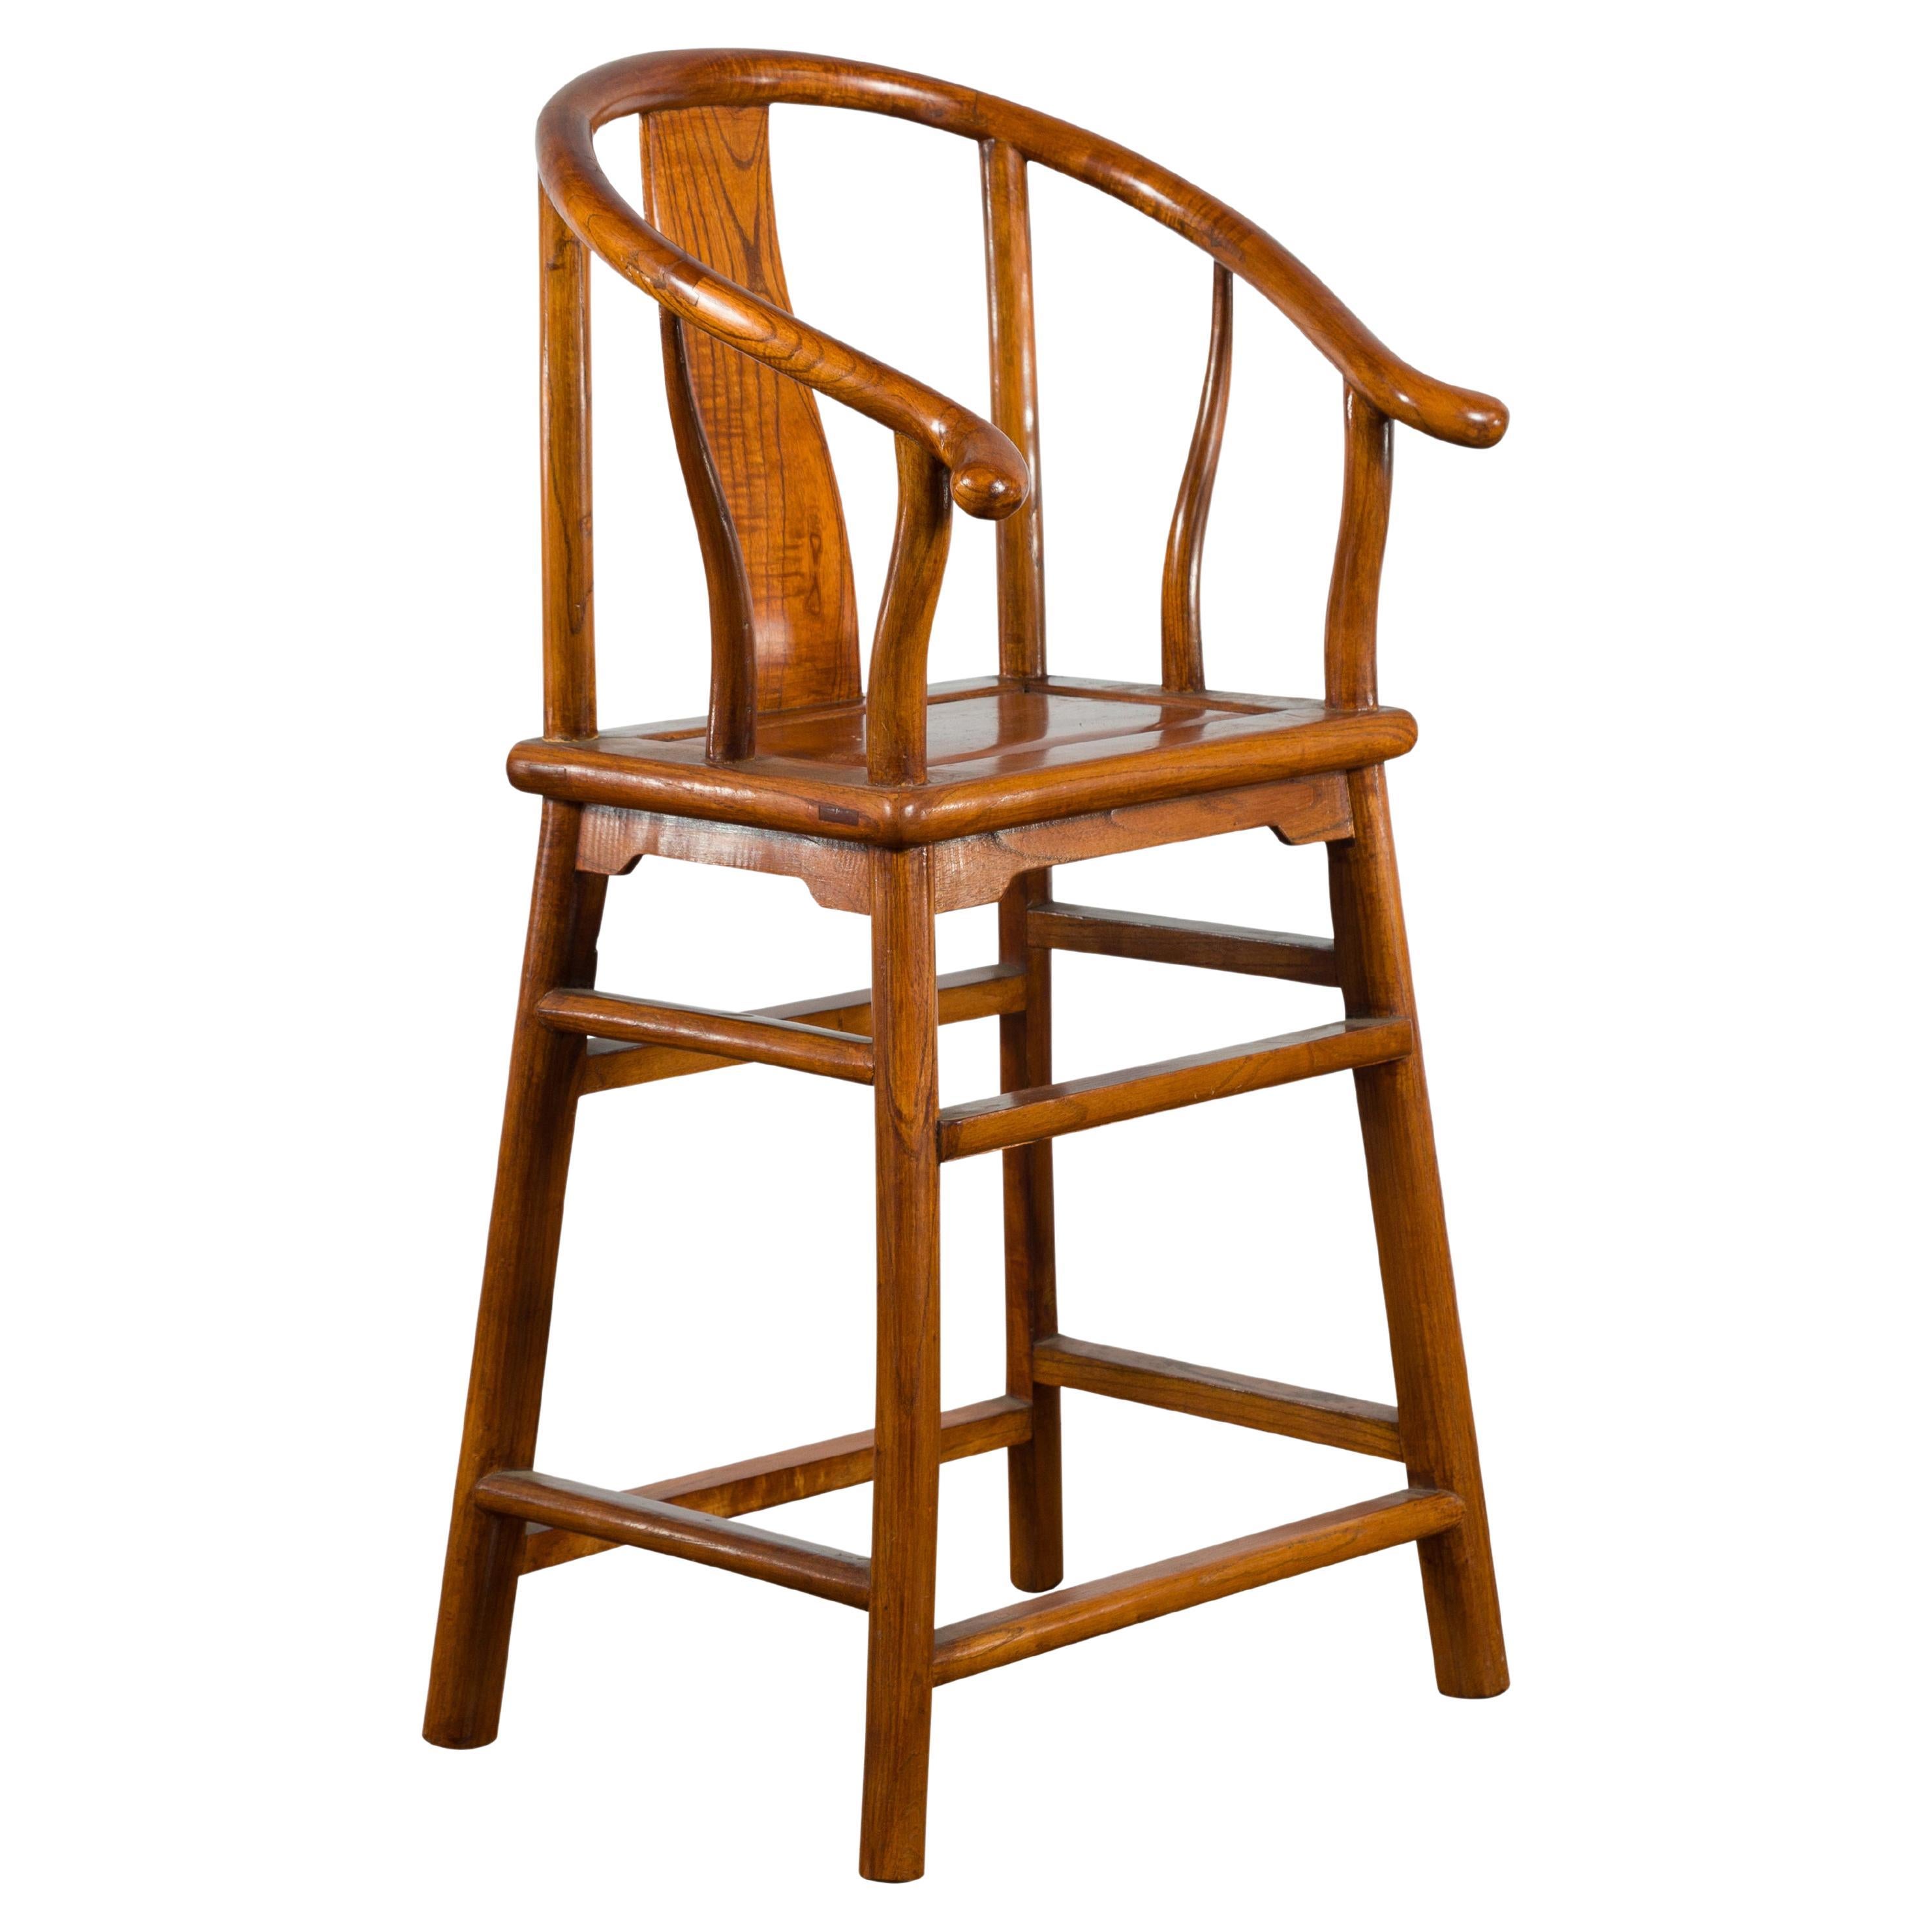 Petite chaise chinoise vintage à dossier en fer à cheval avec assise en bois et brancards latéraux